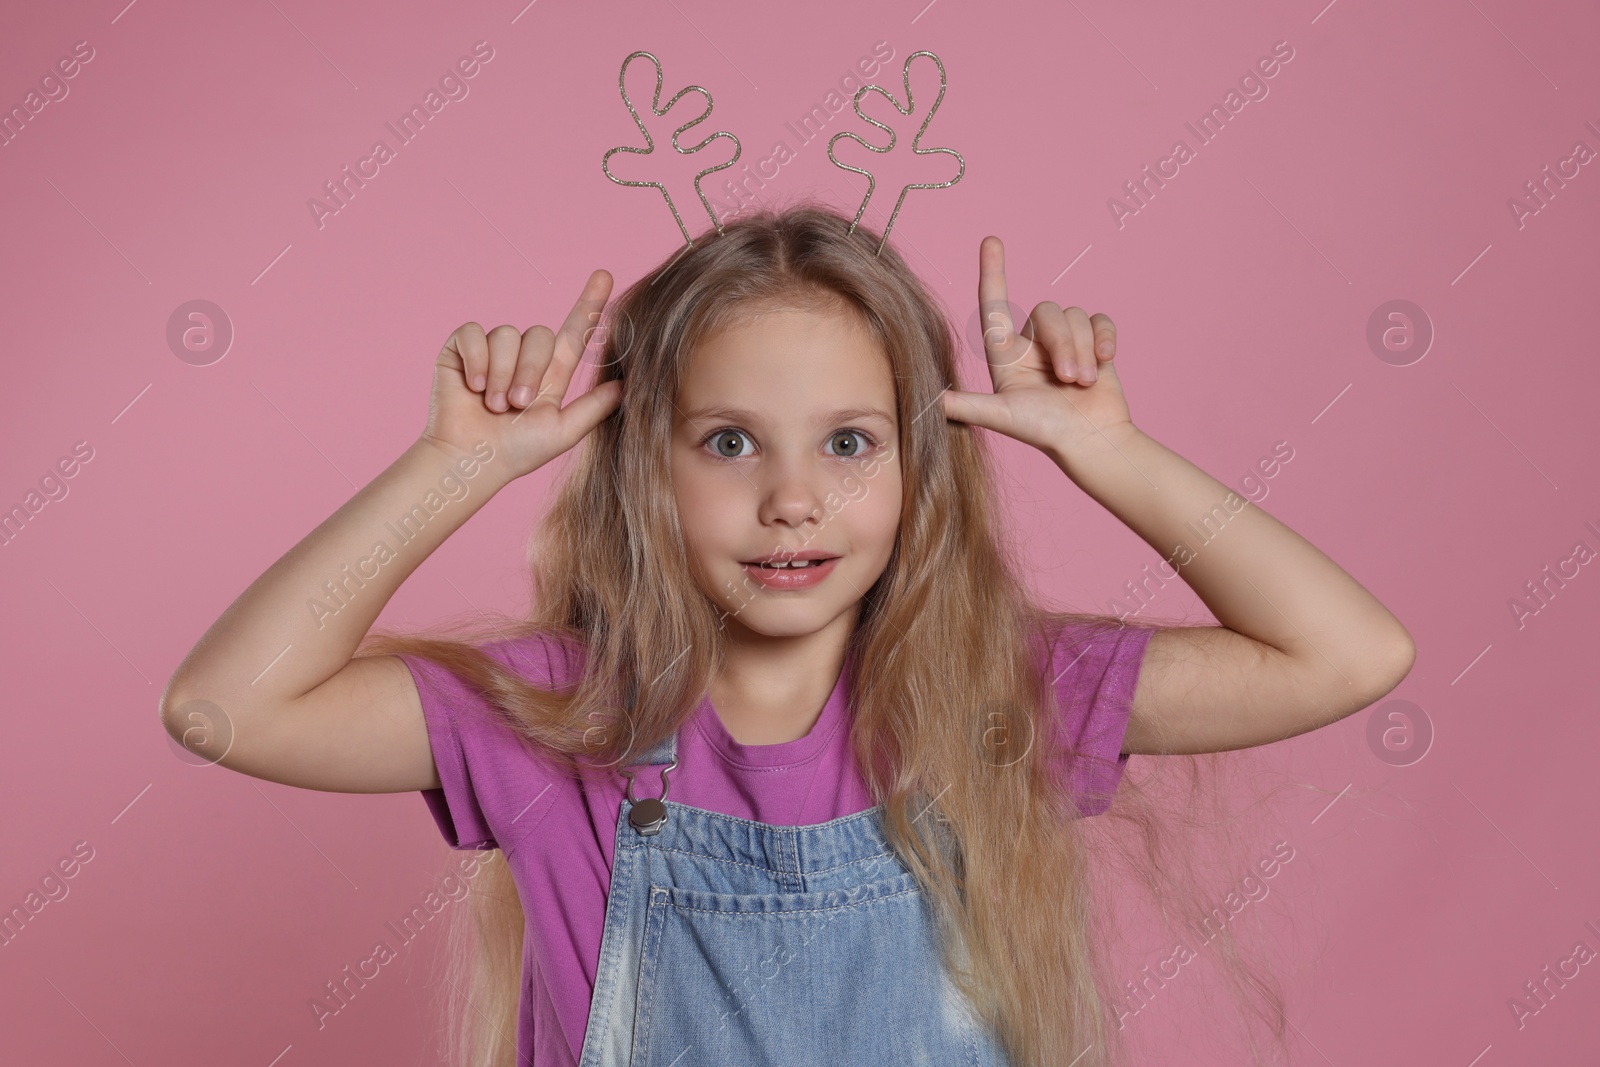 Photo of Playful girl wearing beautiful headband on pink background